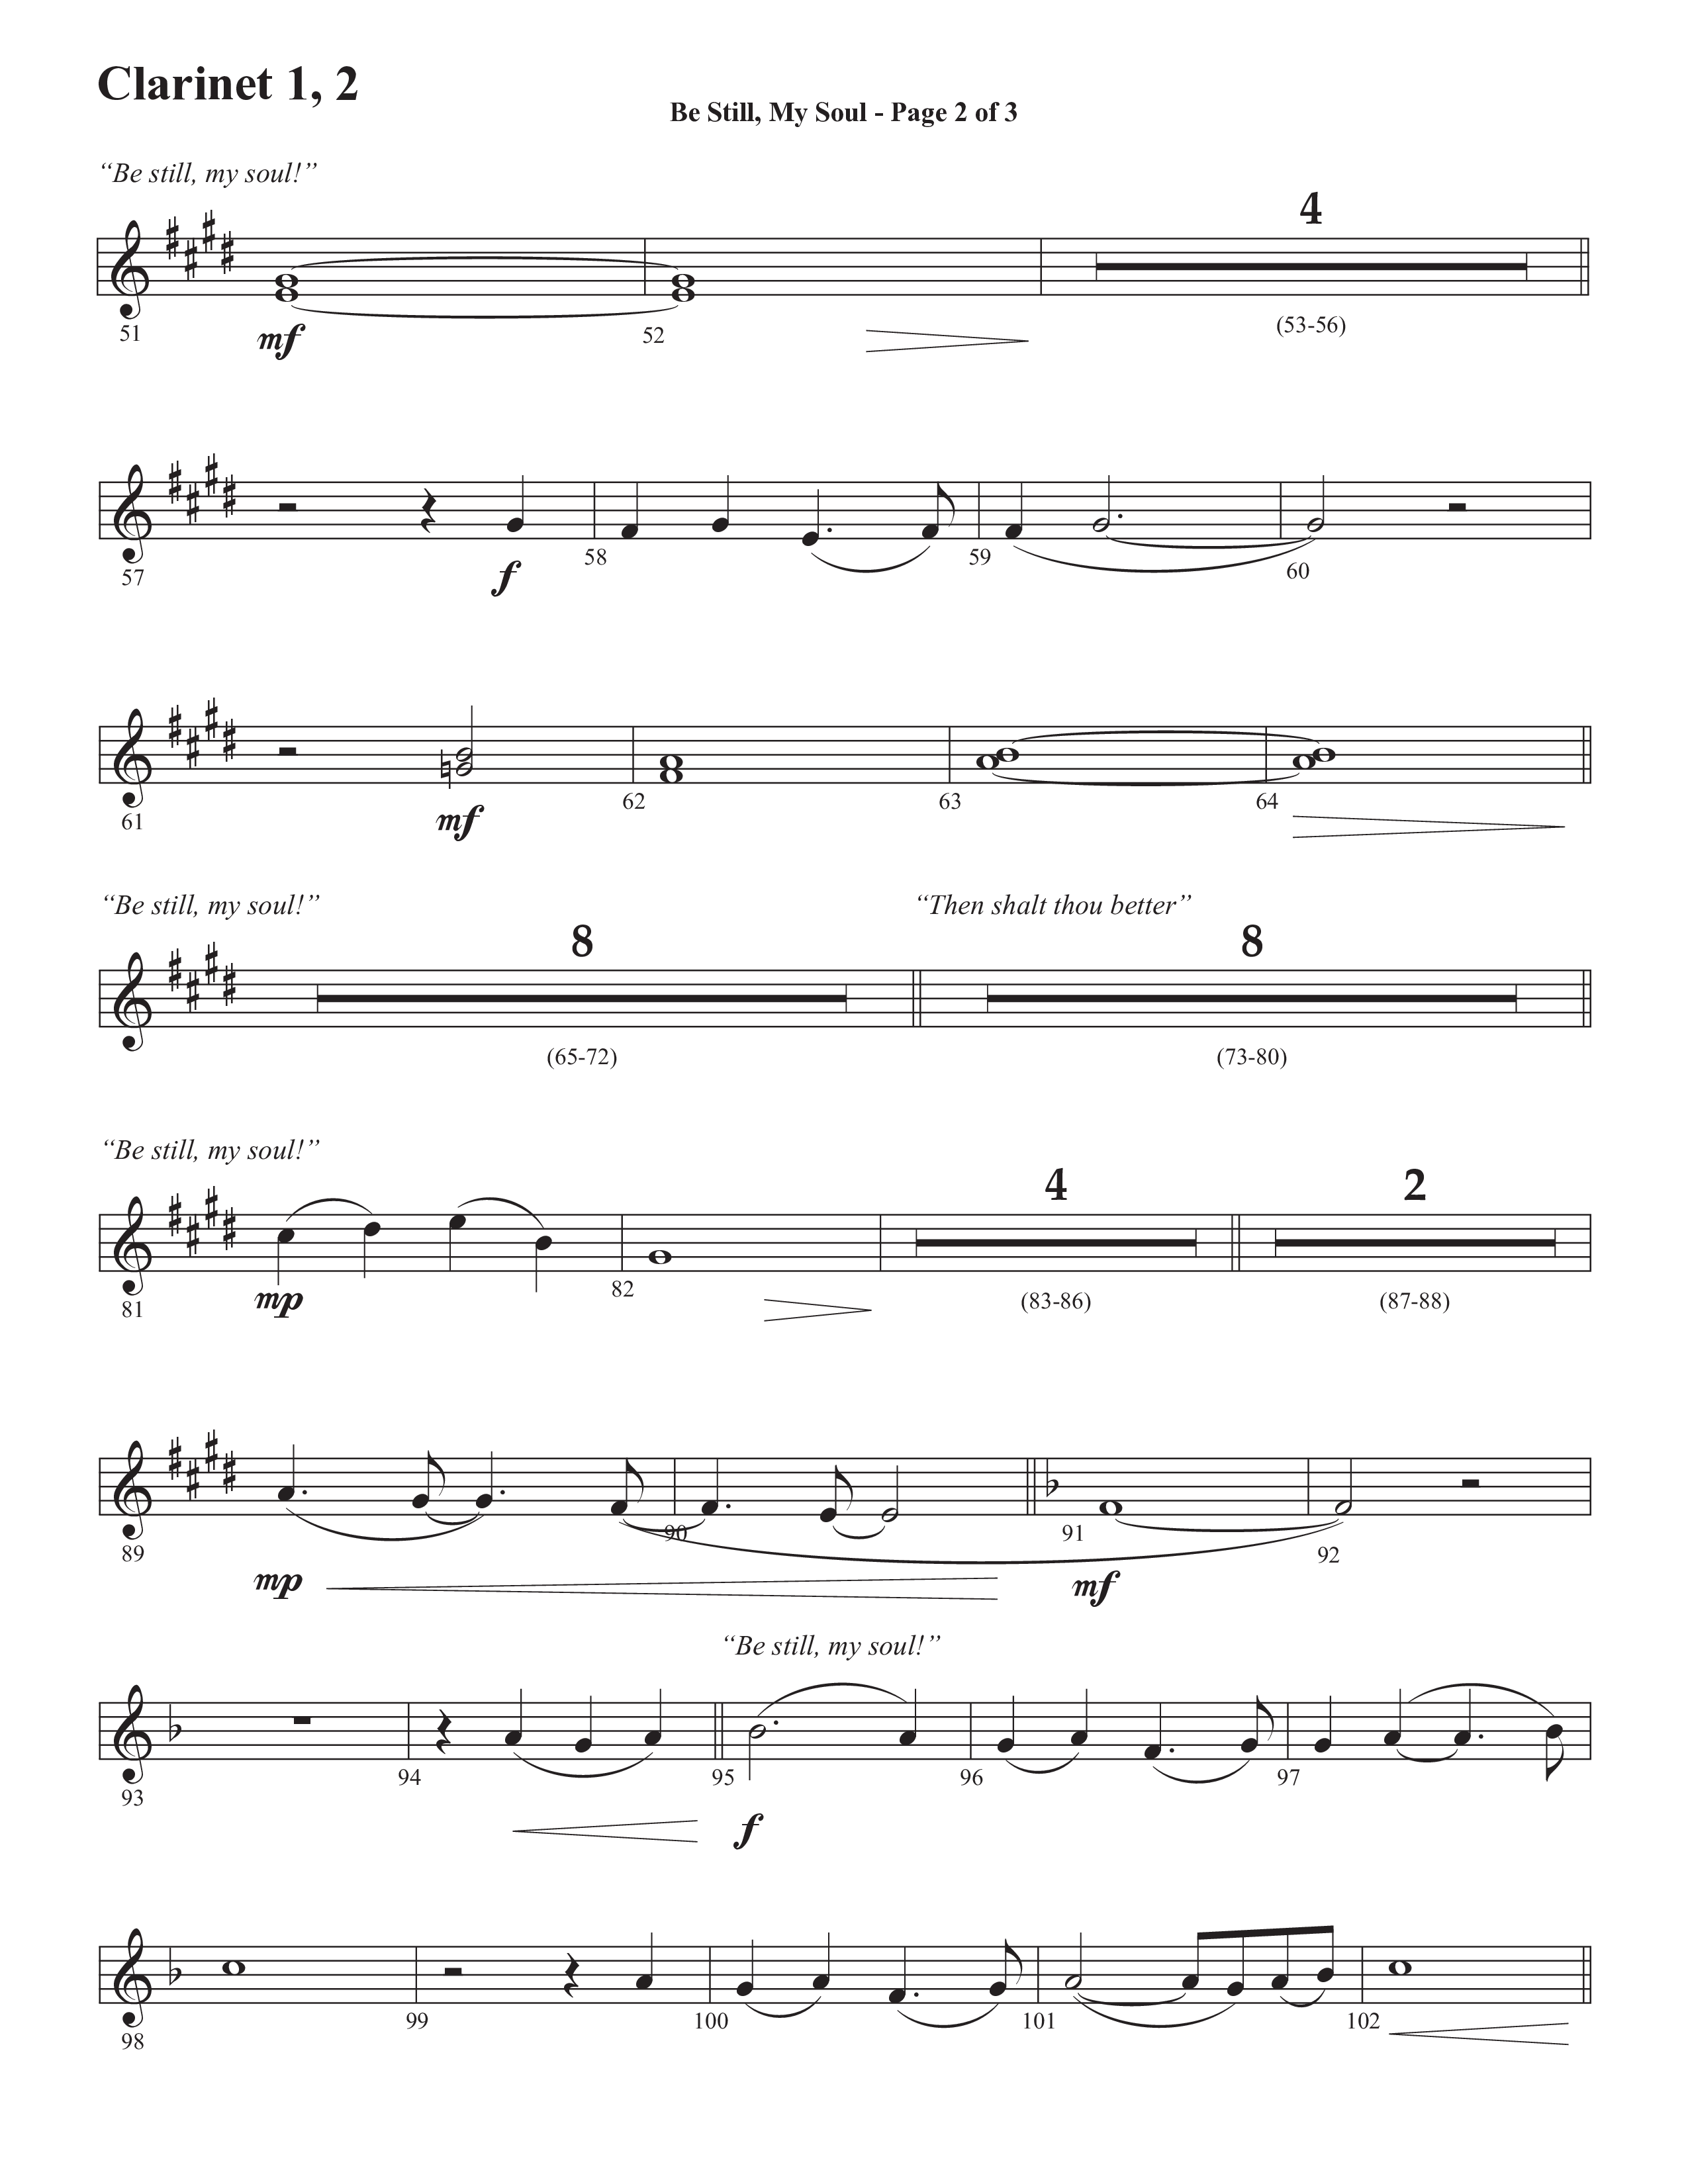 Be Still My Soul (Choral Anthem SATB) Clarinet 1/2 (Semsen Music / Arr. Cliff Duren)